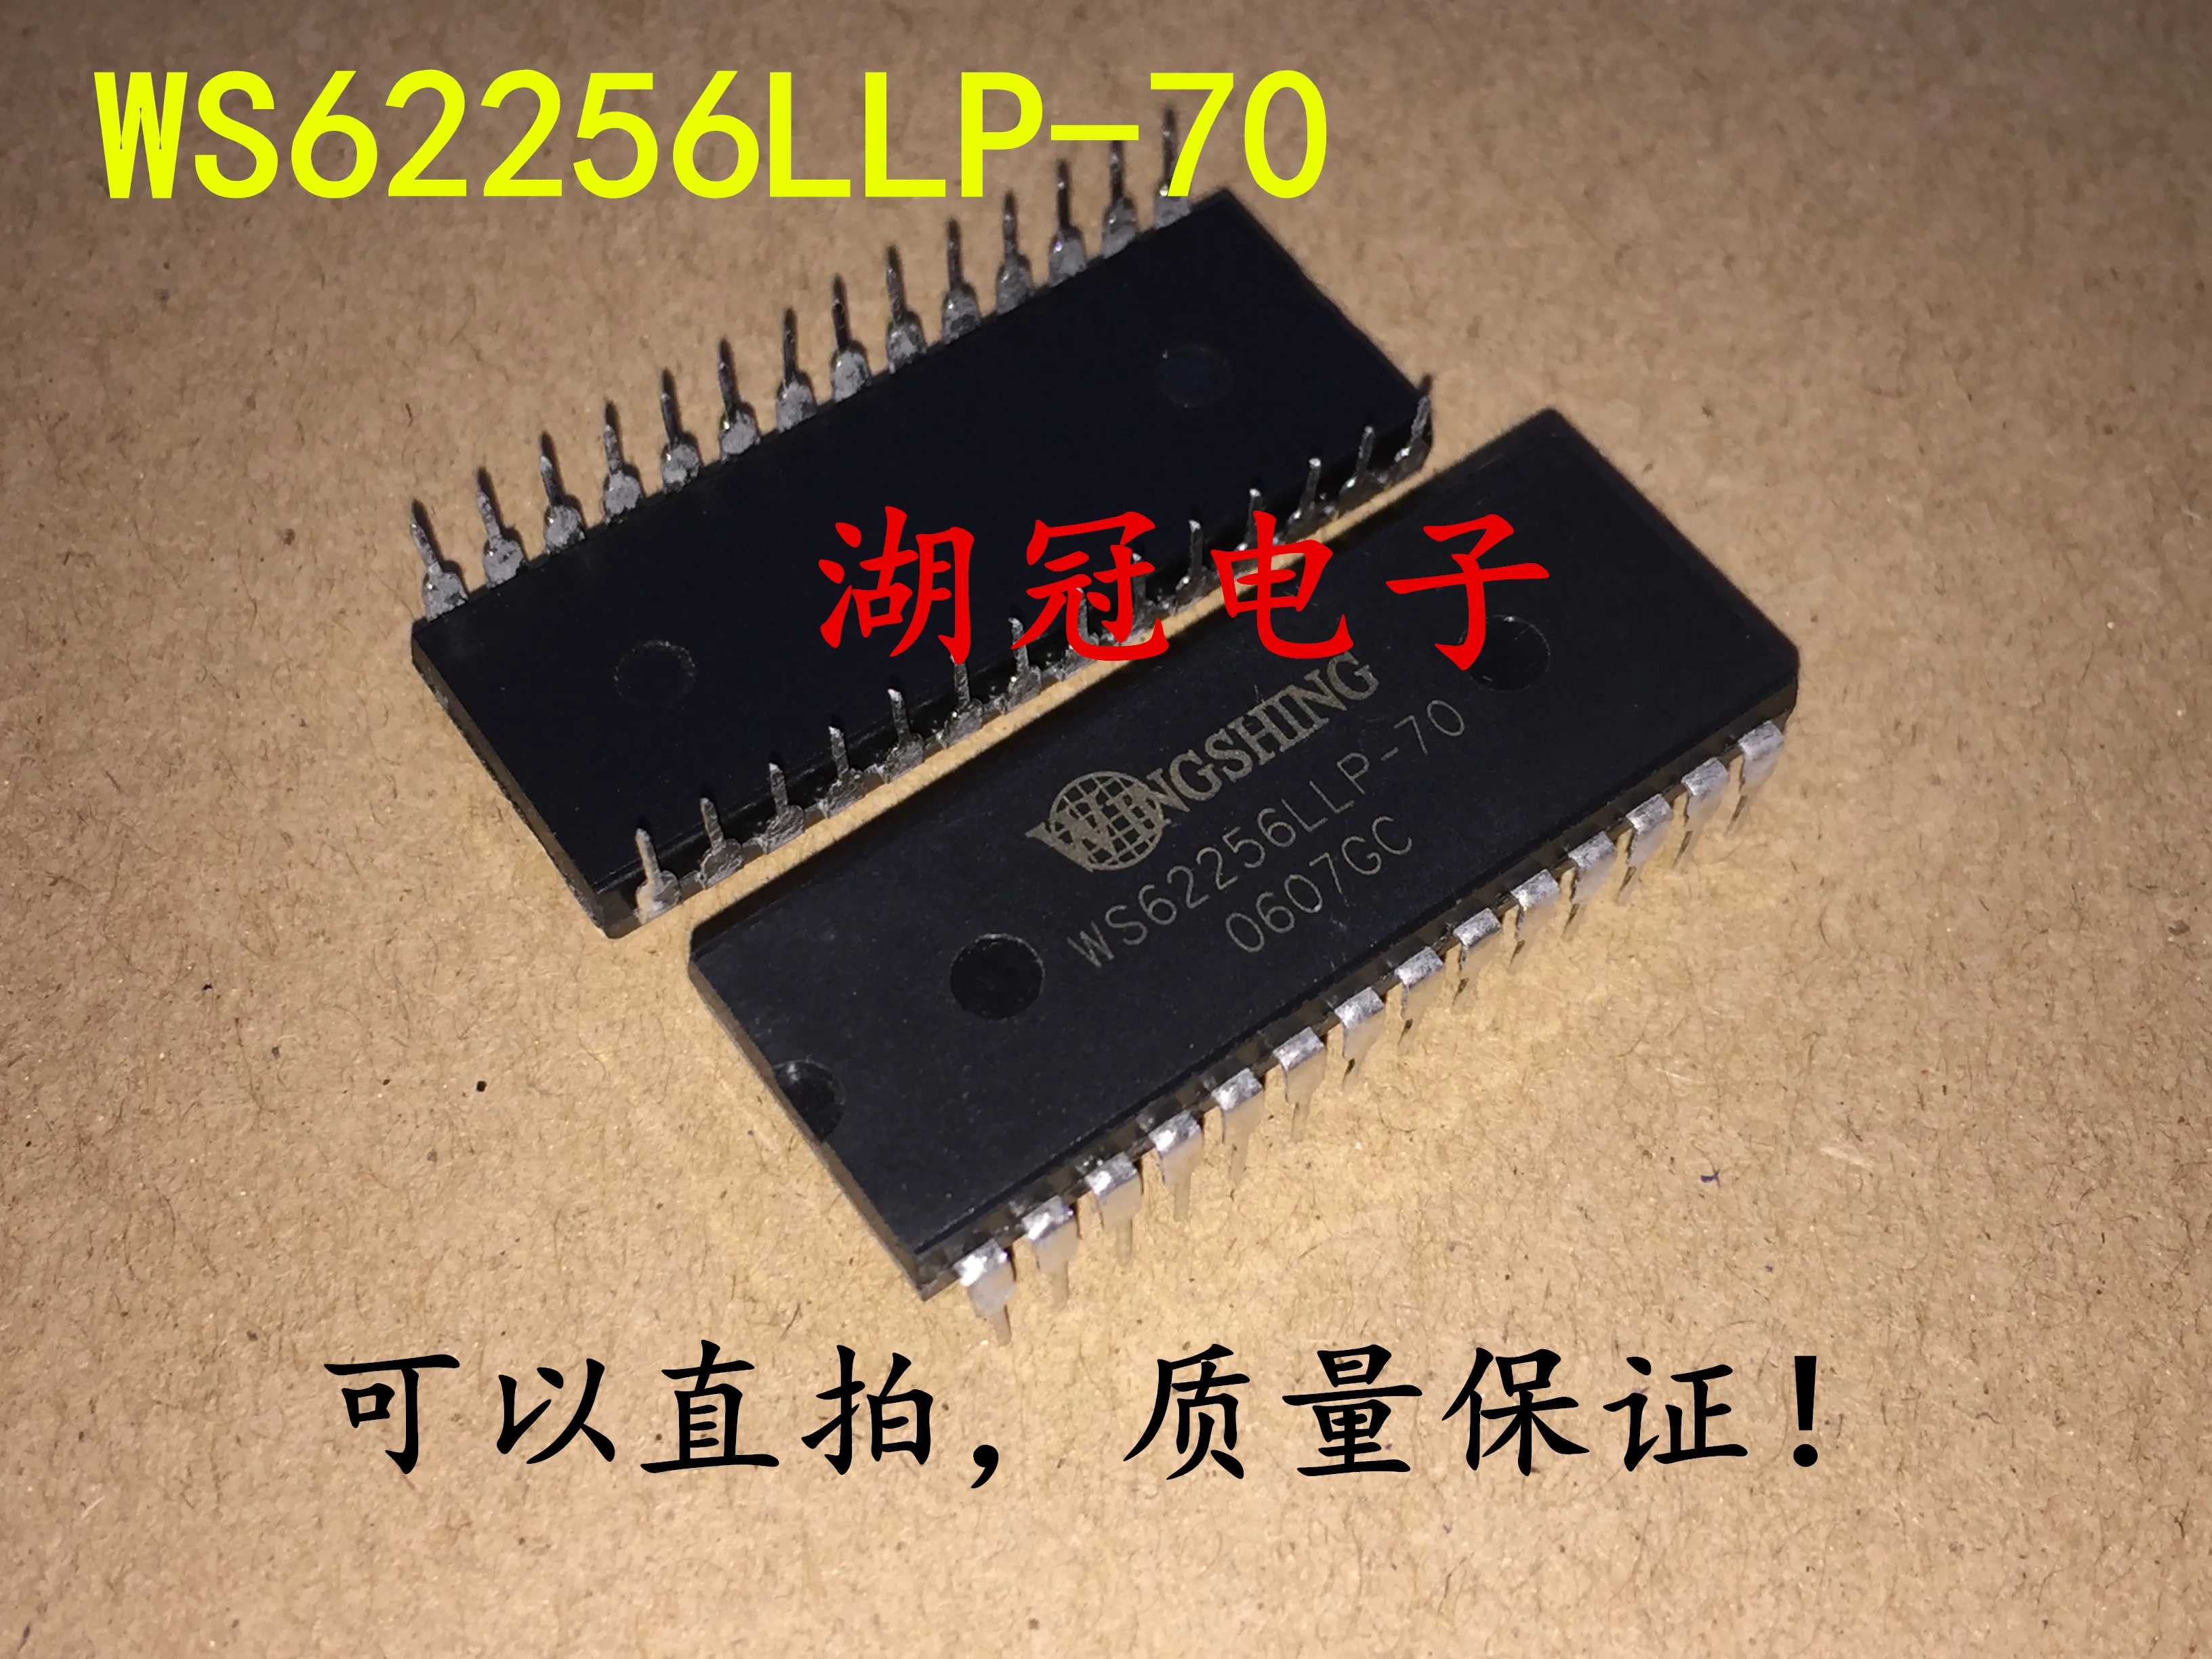 

10pcs original new WS62256LLP-70 DIP Integrated Circuit IC